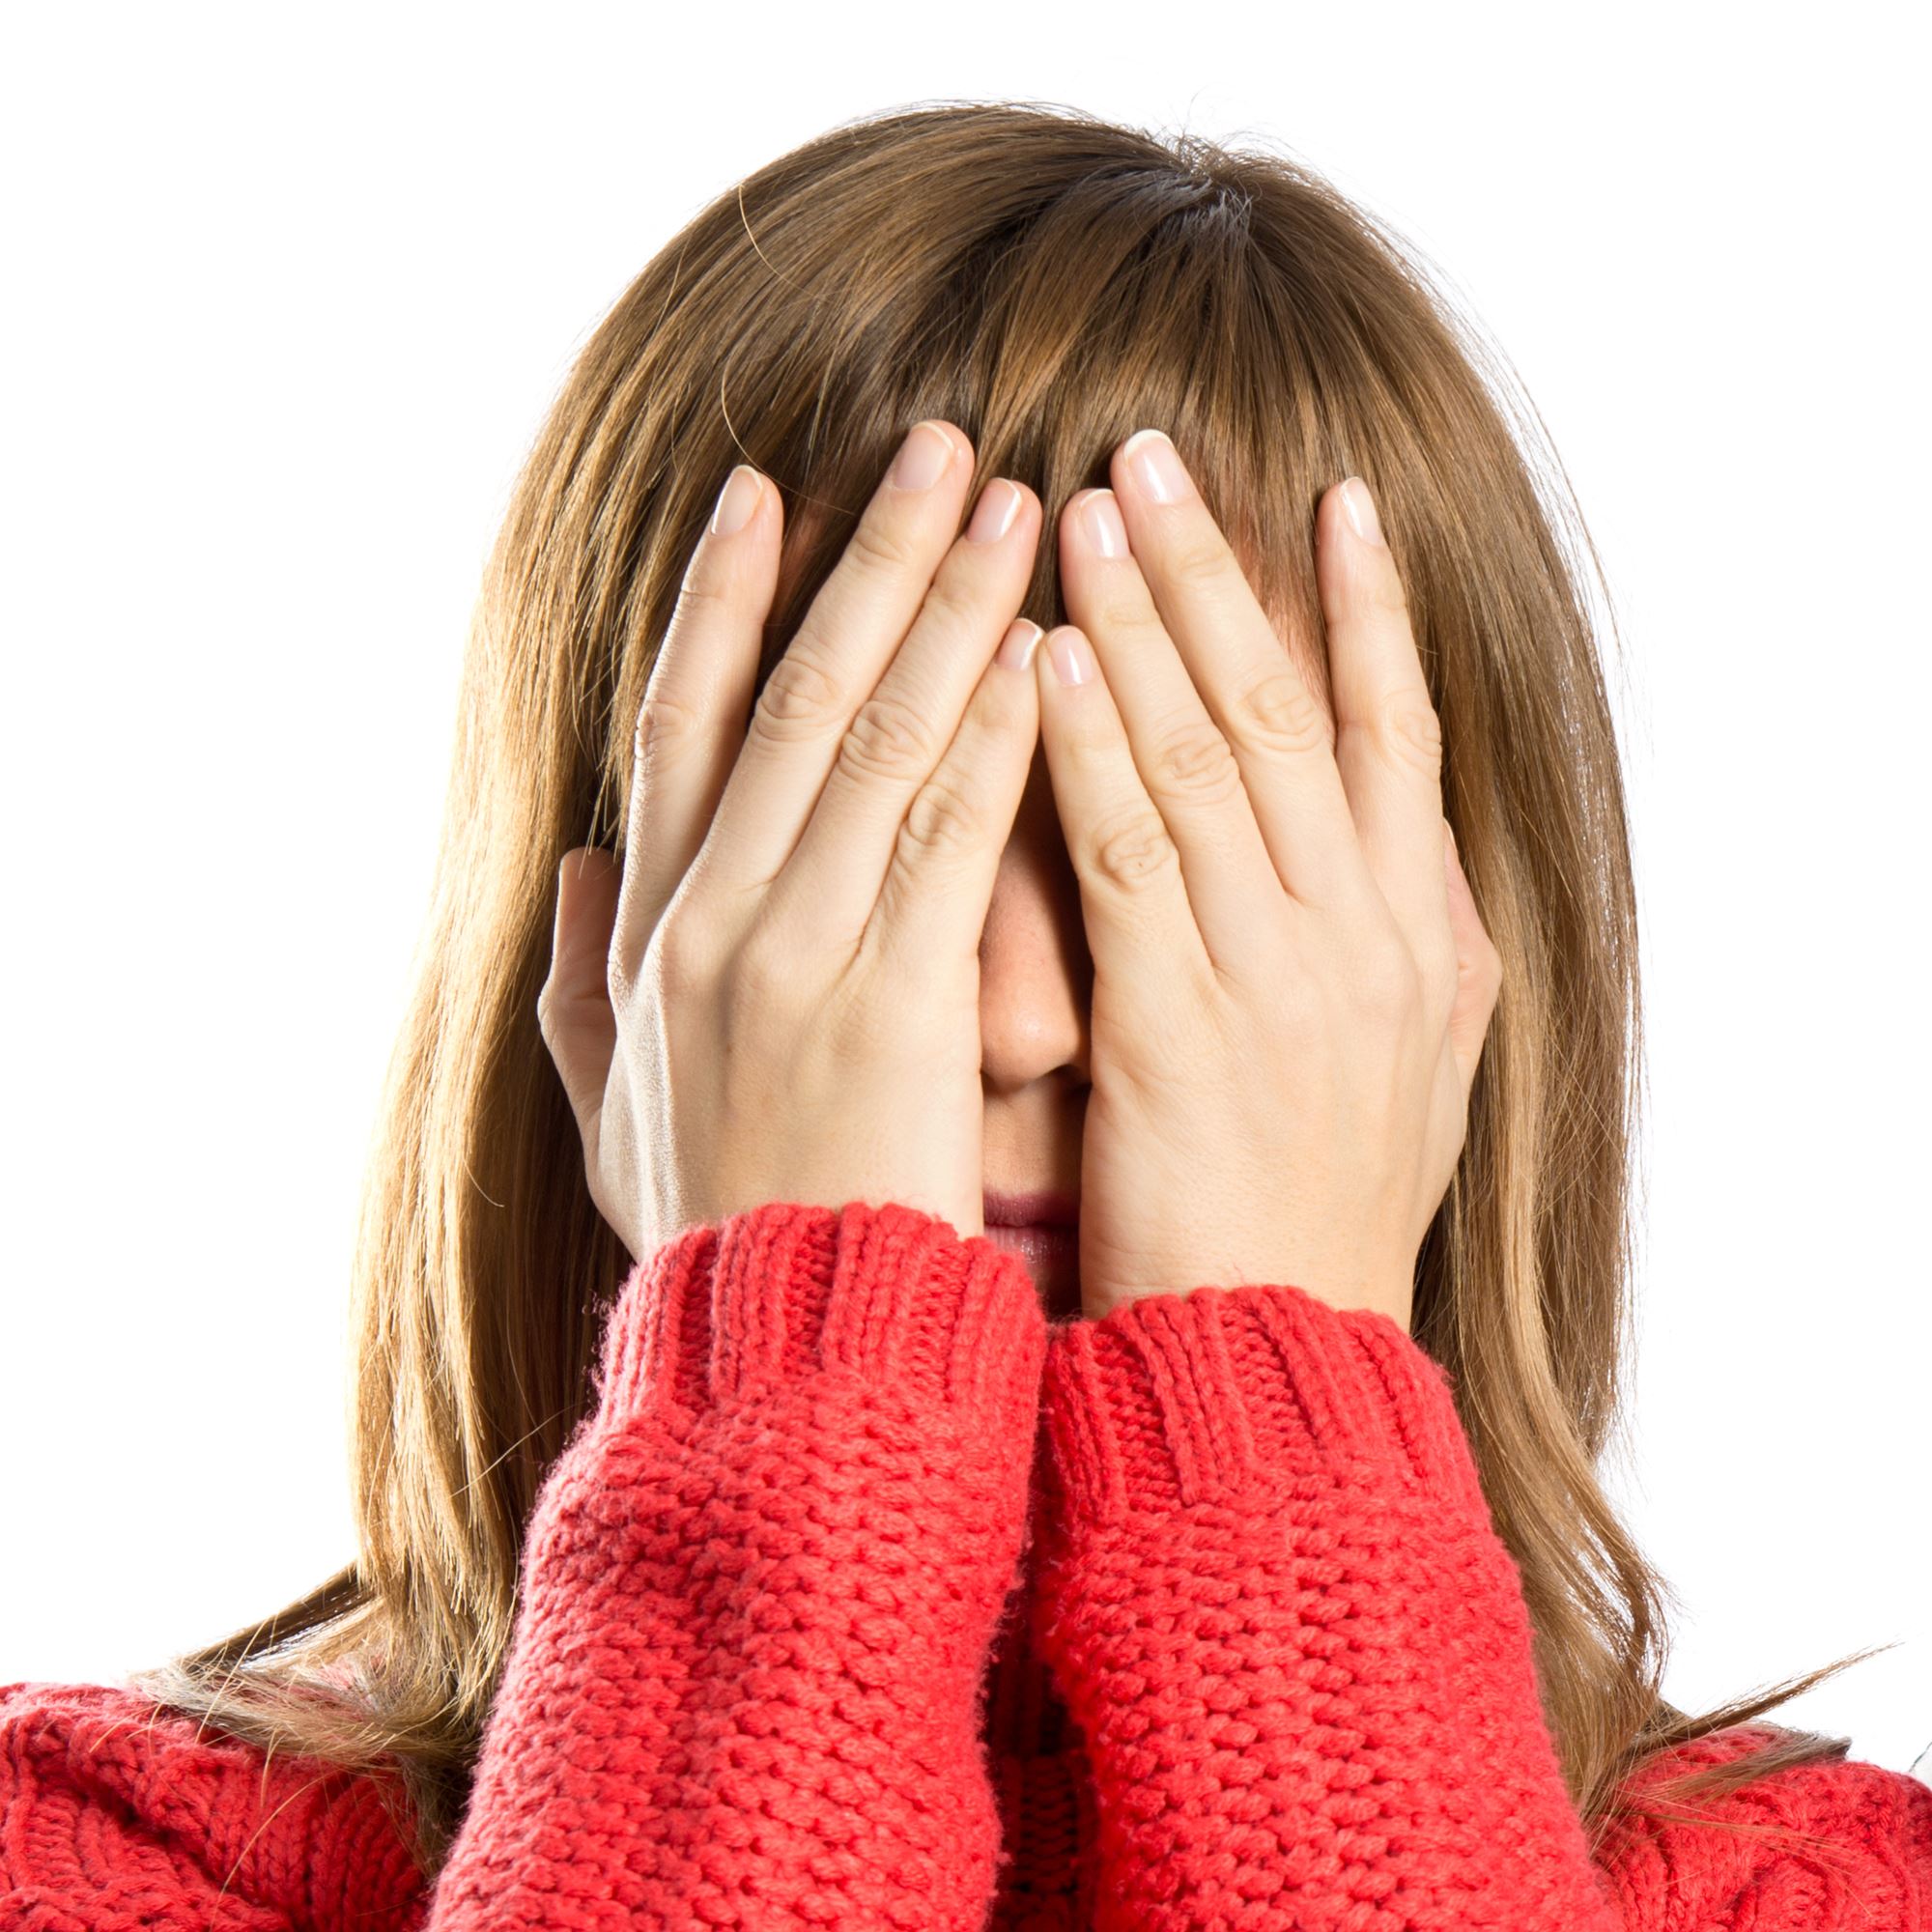 Een vrouw met een rode trui en bruine haren heeft haar handen voor haar ogen.